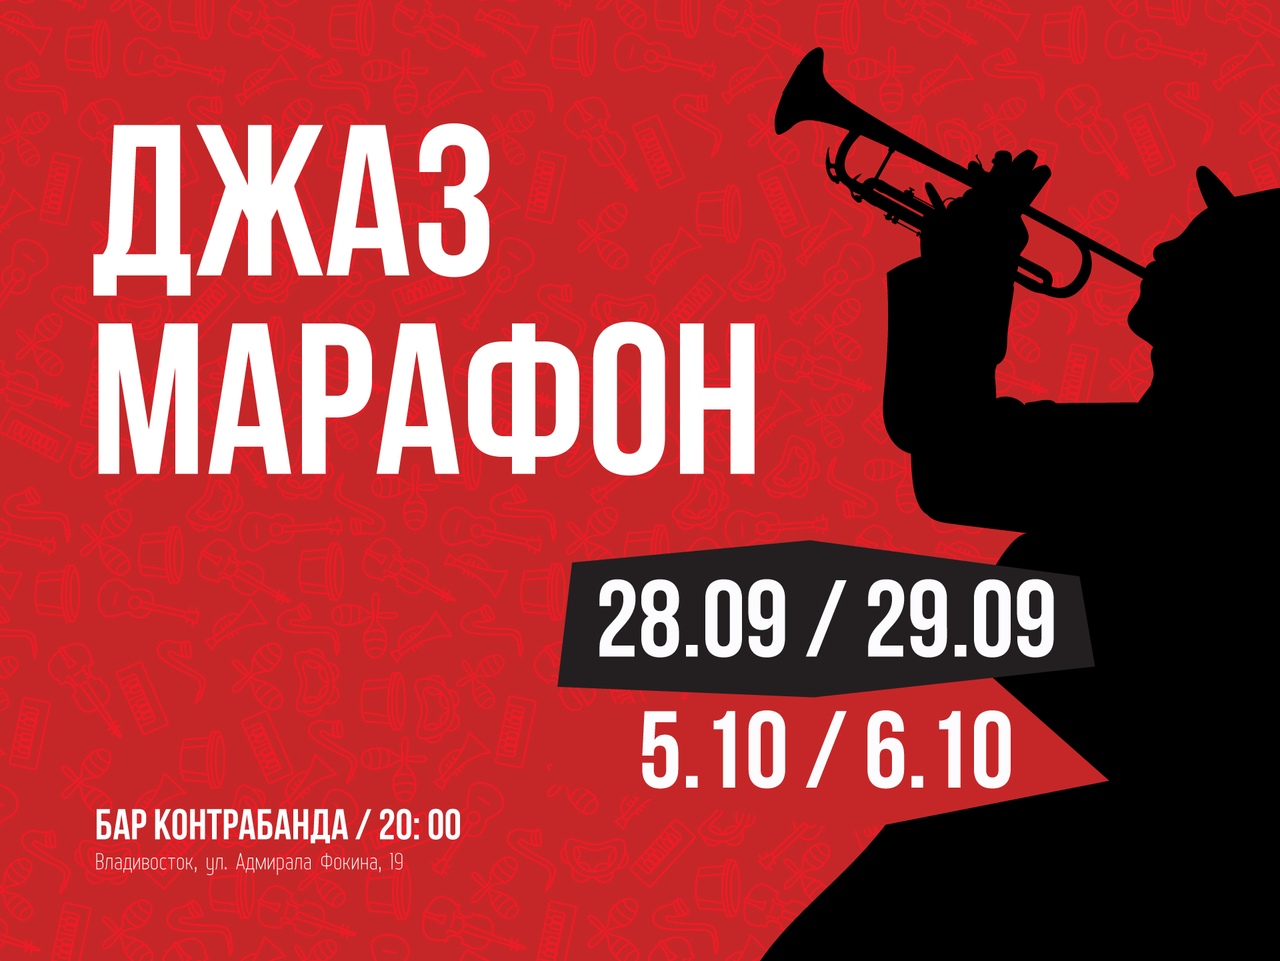 Джазовый марафон в джаз-баре «Контрабанда» с 28 сентября по 6 октября